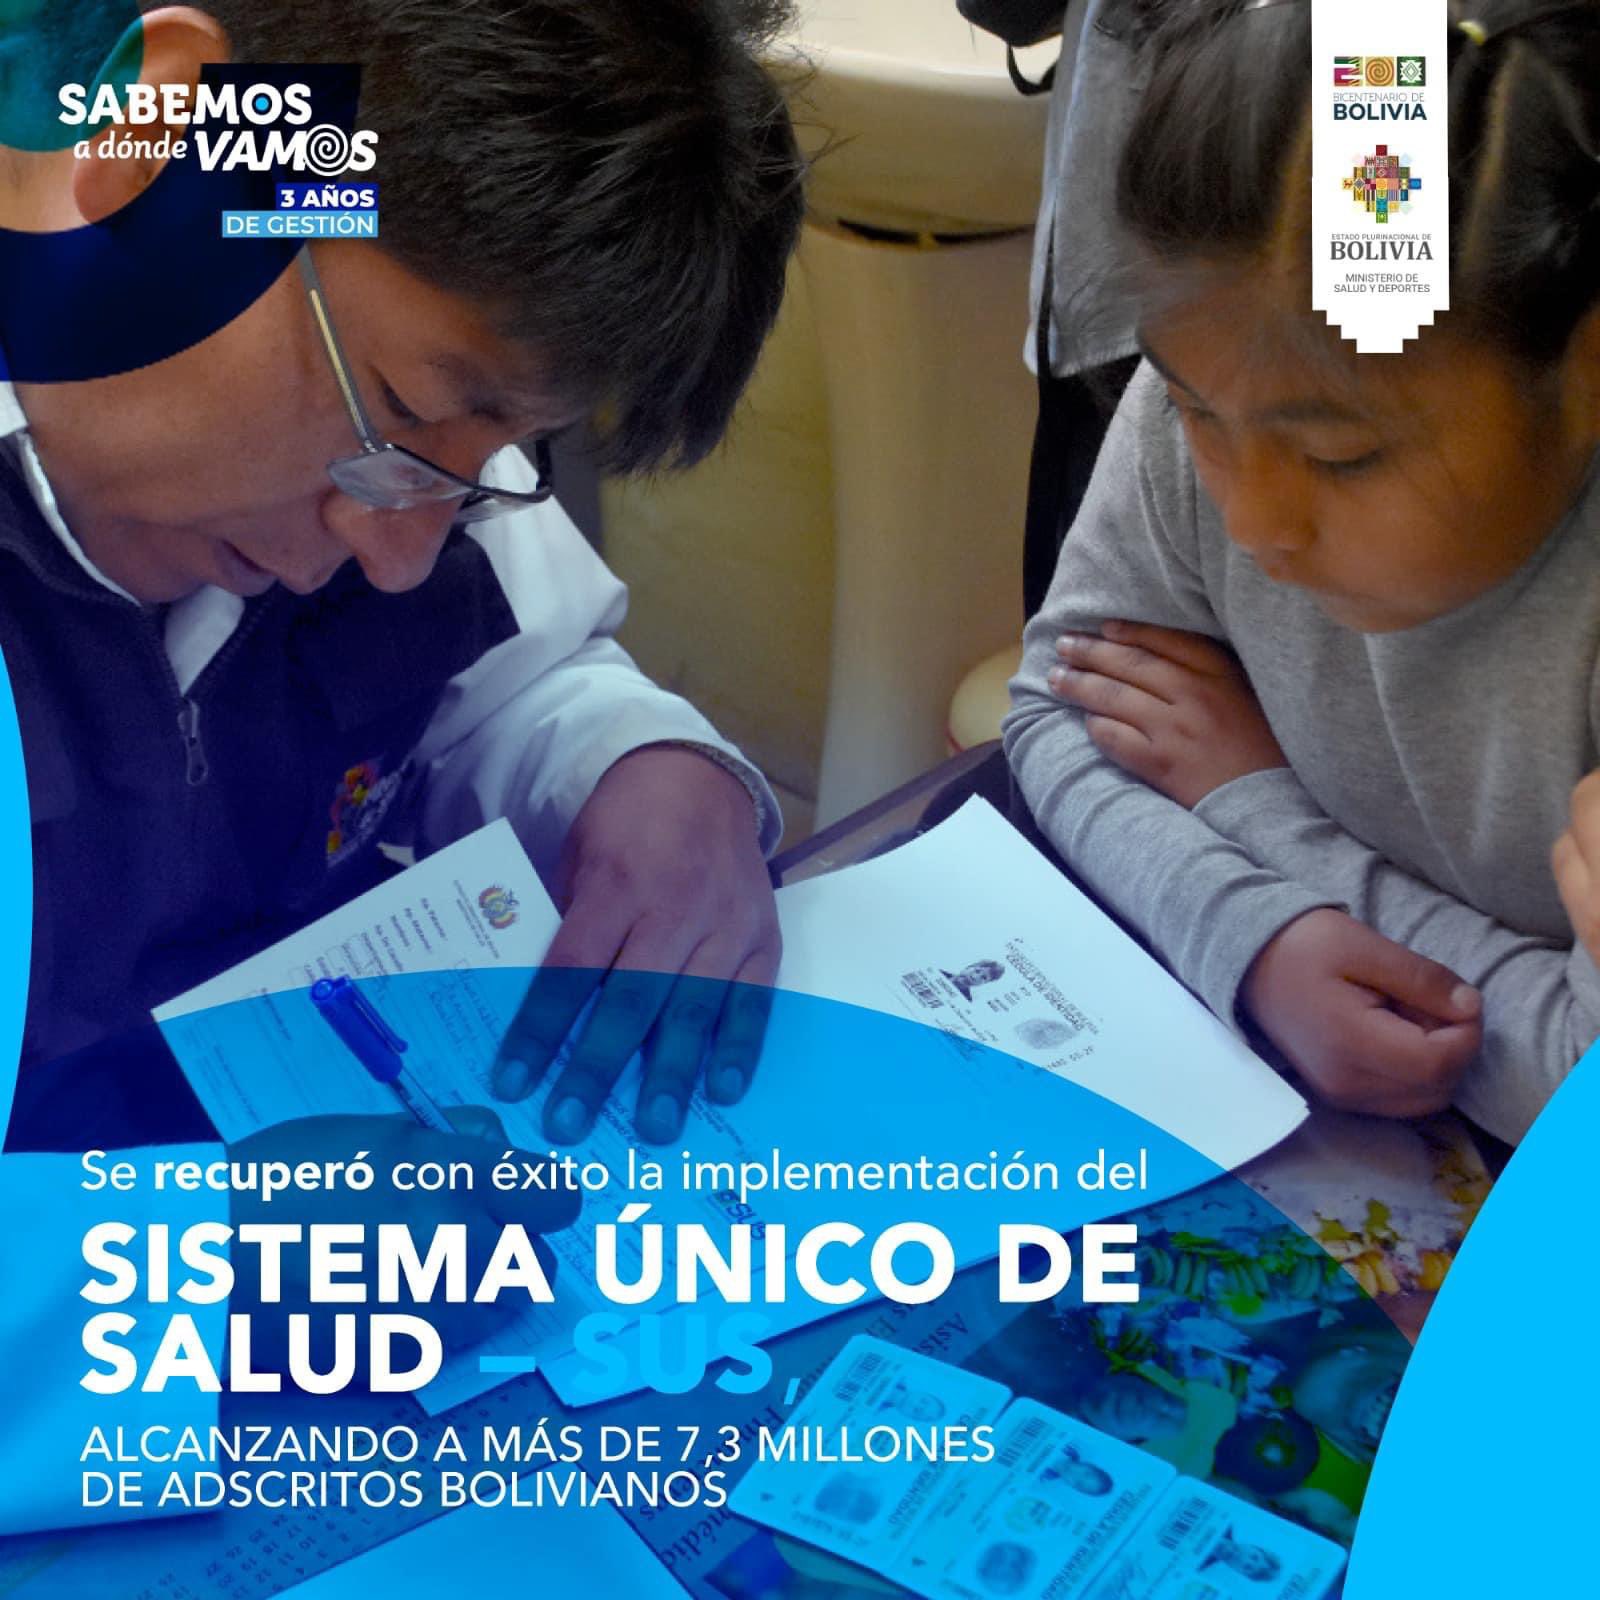 Ministerio de Salud y Deportes de Bolivia - MINISTERIO DE SALUD